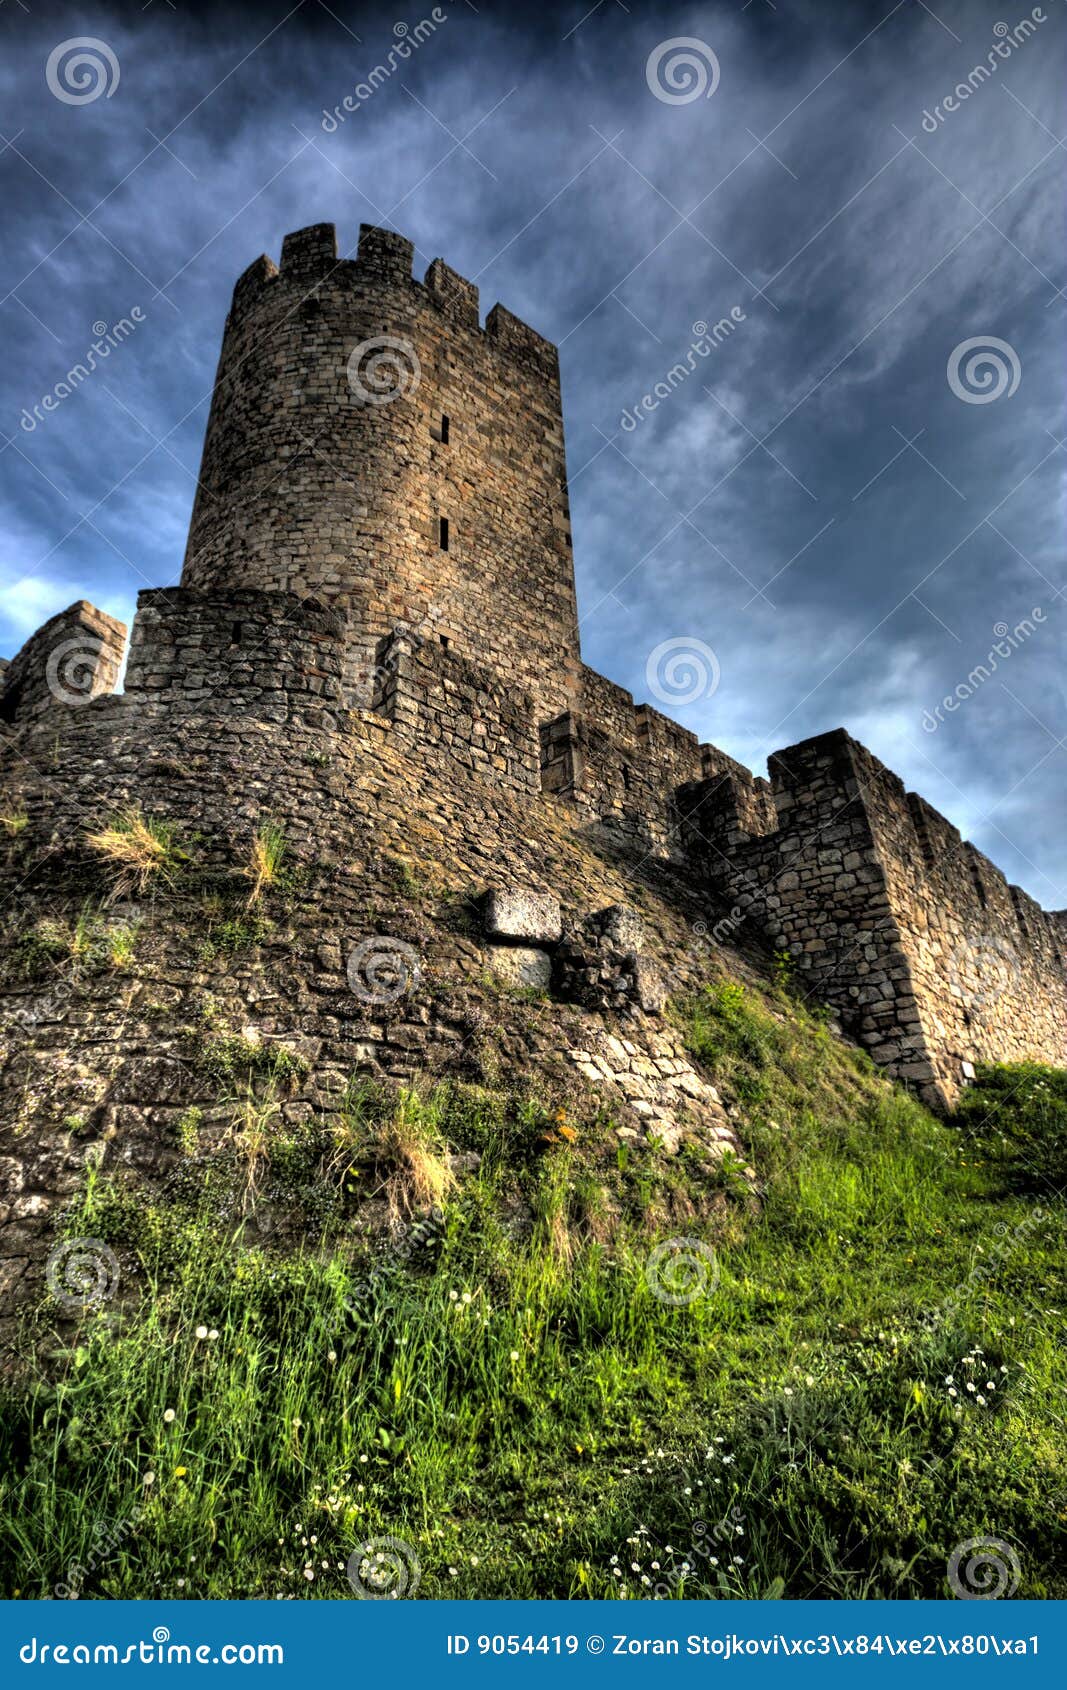 fortress - kalemegdan in belgrade, serbia